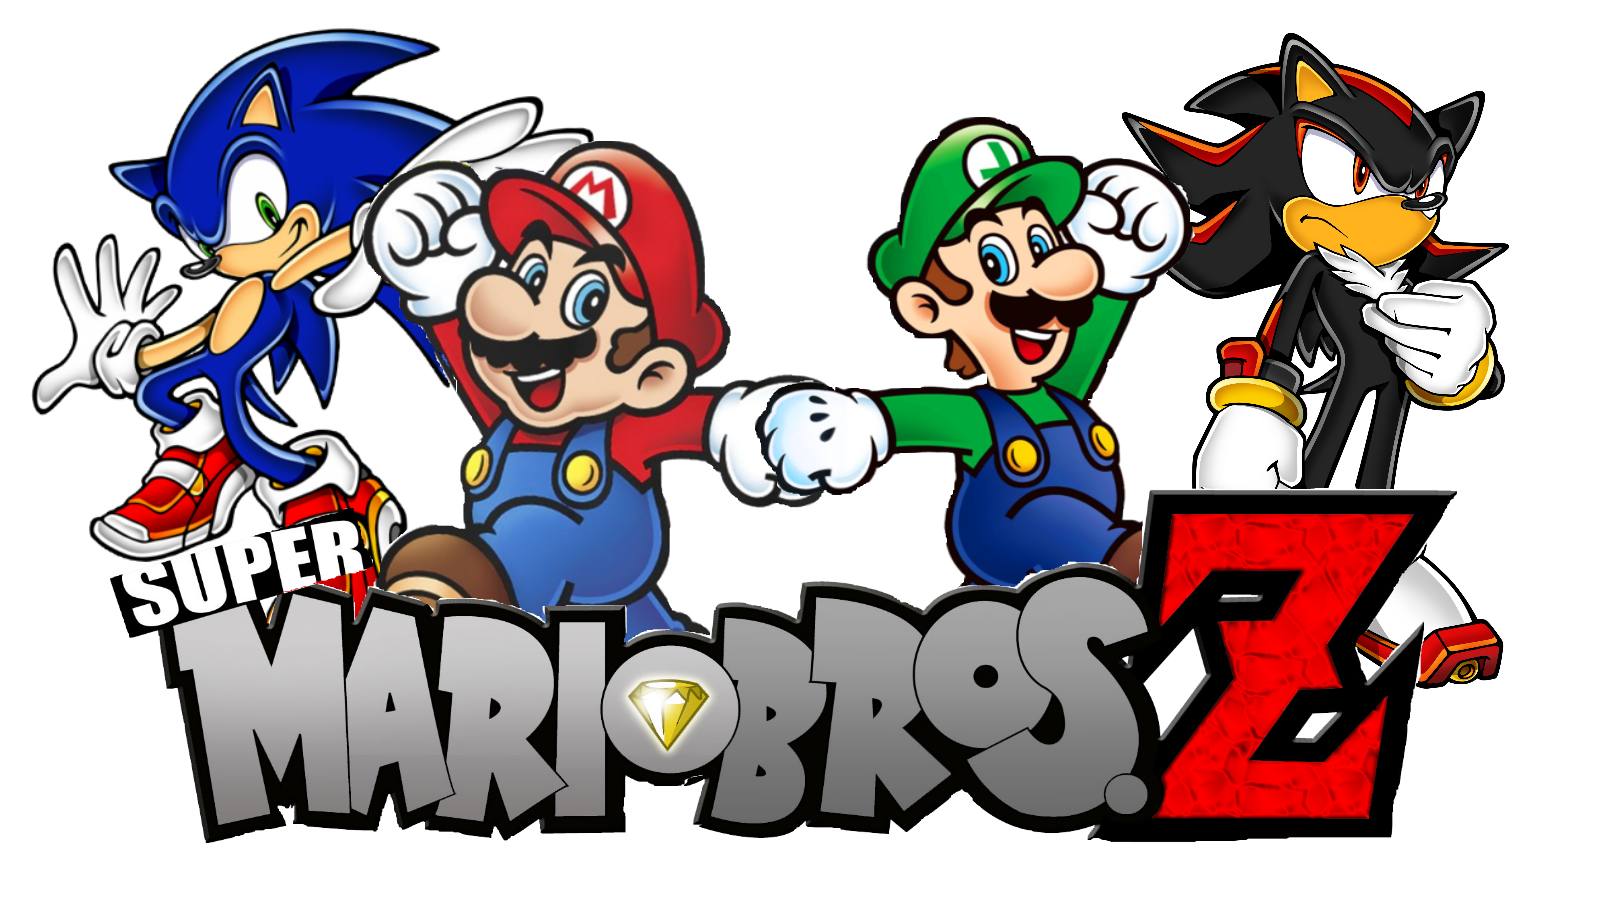 Super Mario Bros. PT-BR 16-bit Logo by BMatSantos on DeviantArt